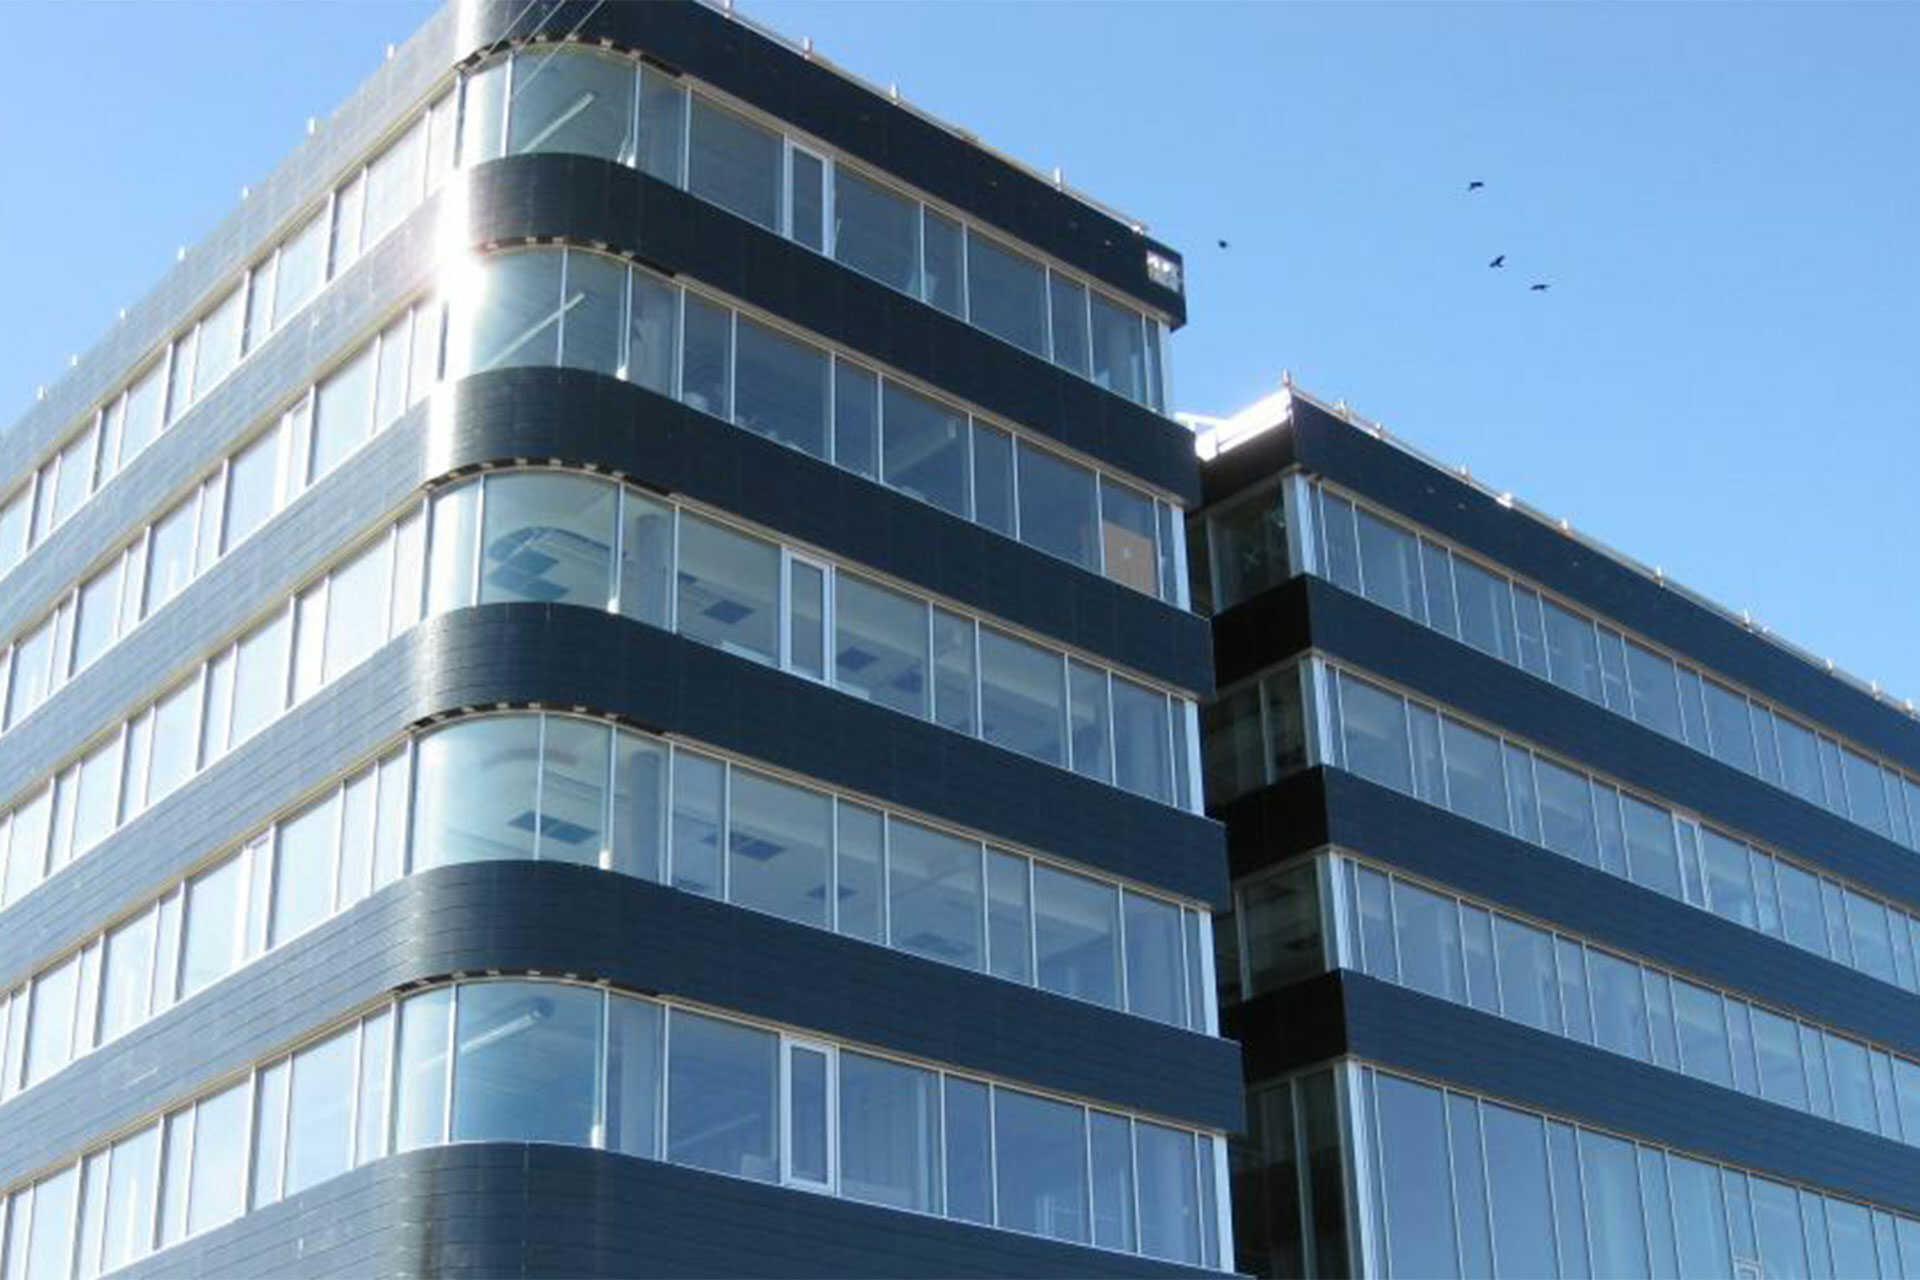 Få indblik i opførelsen af MOEs hovedkontor i to etaper, med den første bygning i 2013 og den anden i 2019. Opnåelse af DGNB Sølv-certificeringen er også bemærkelsesværdig